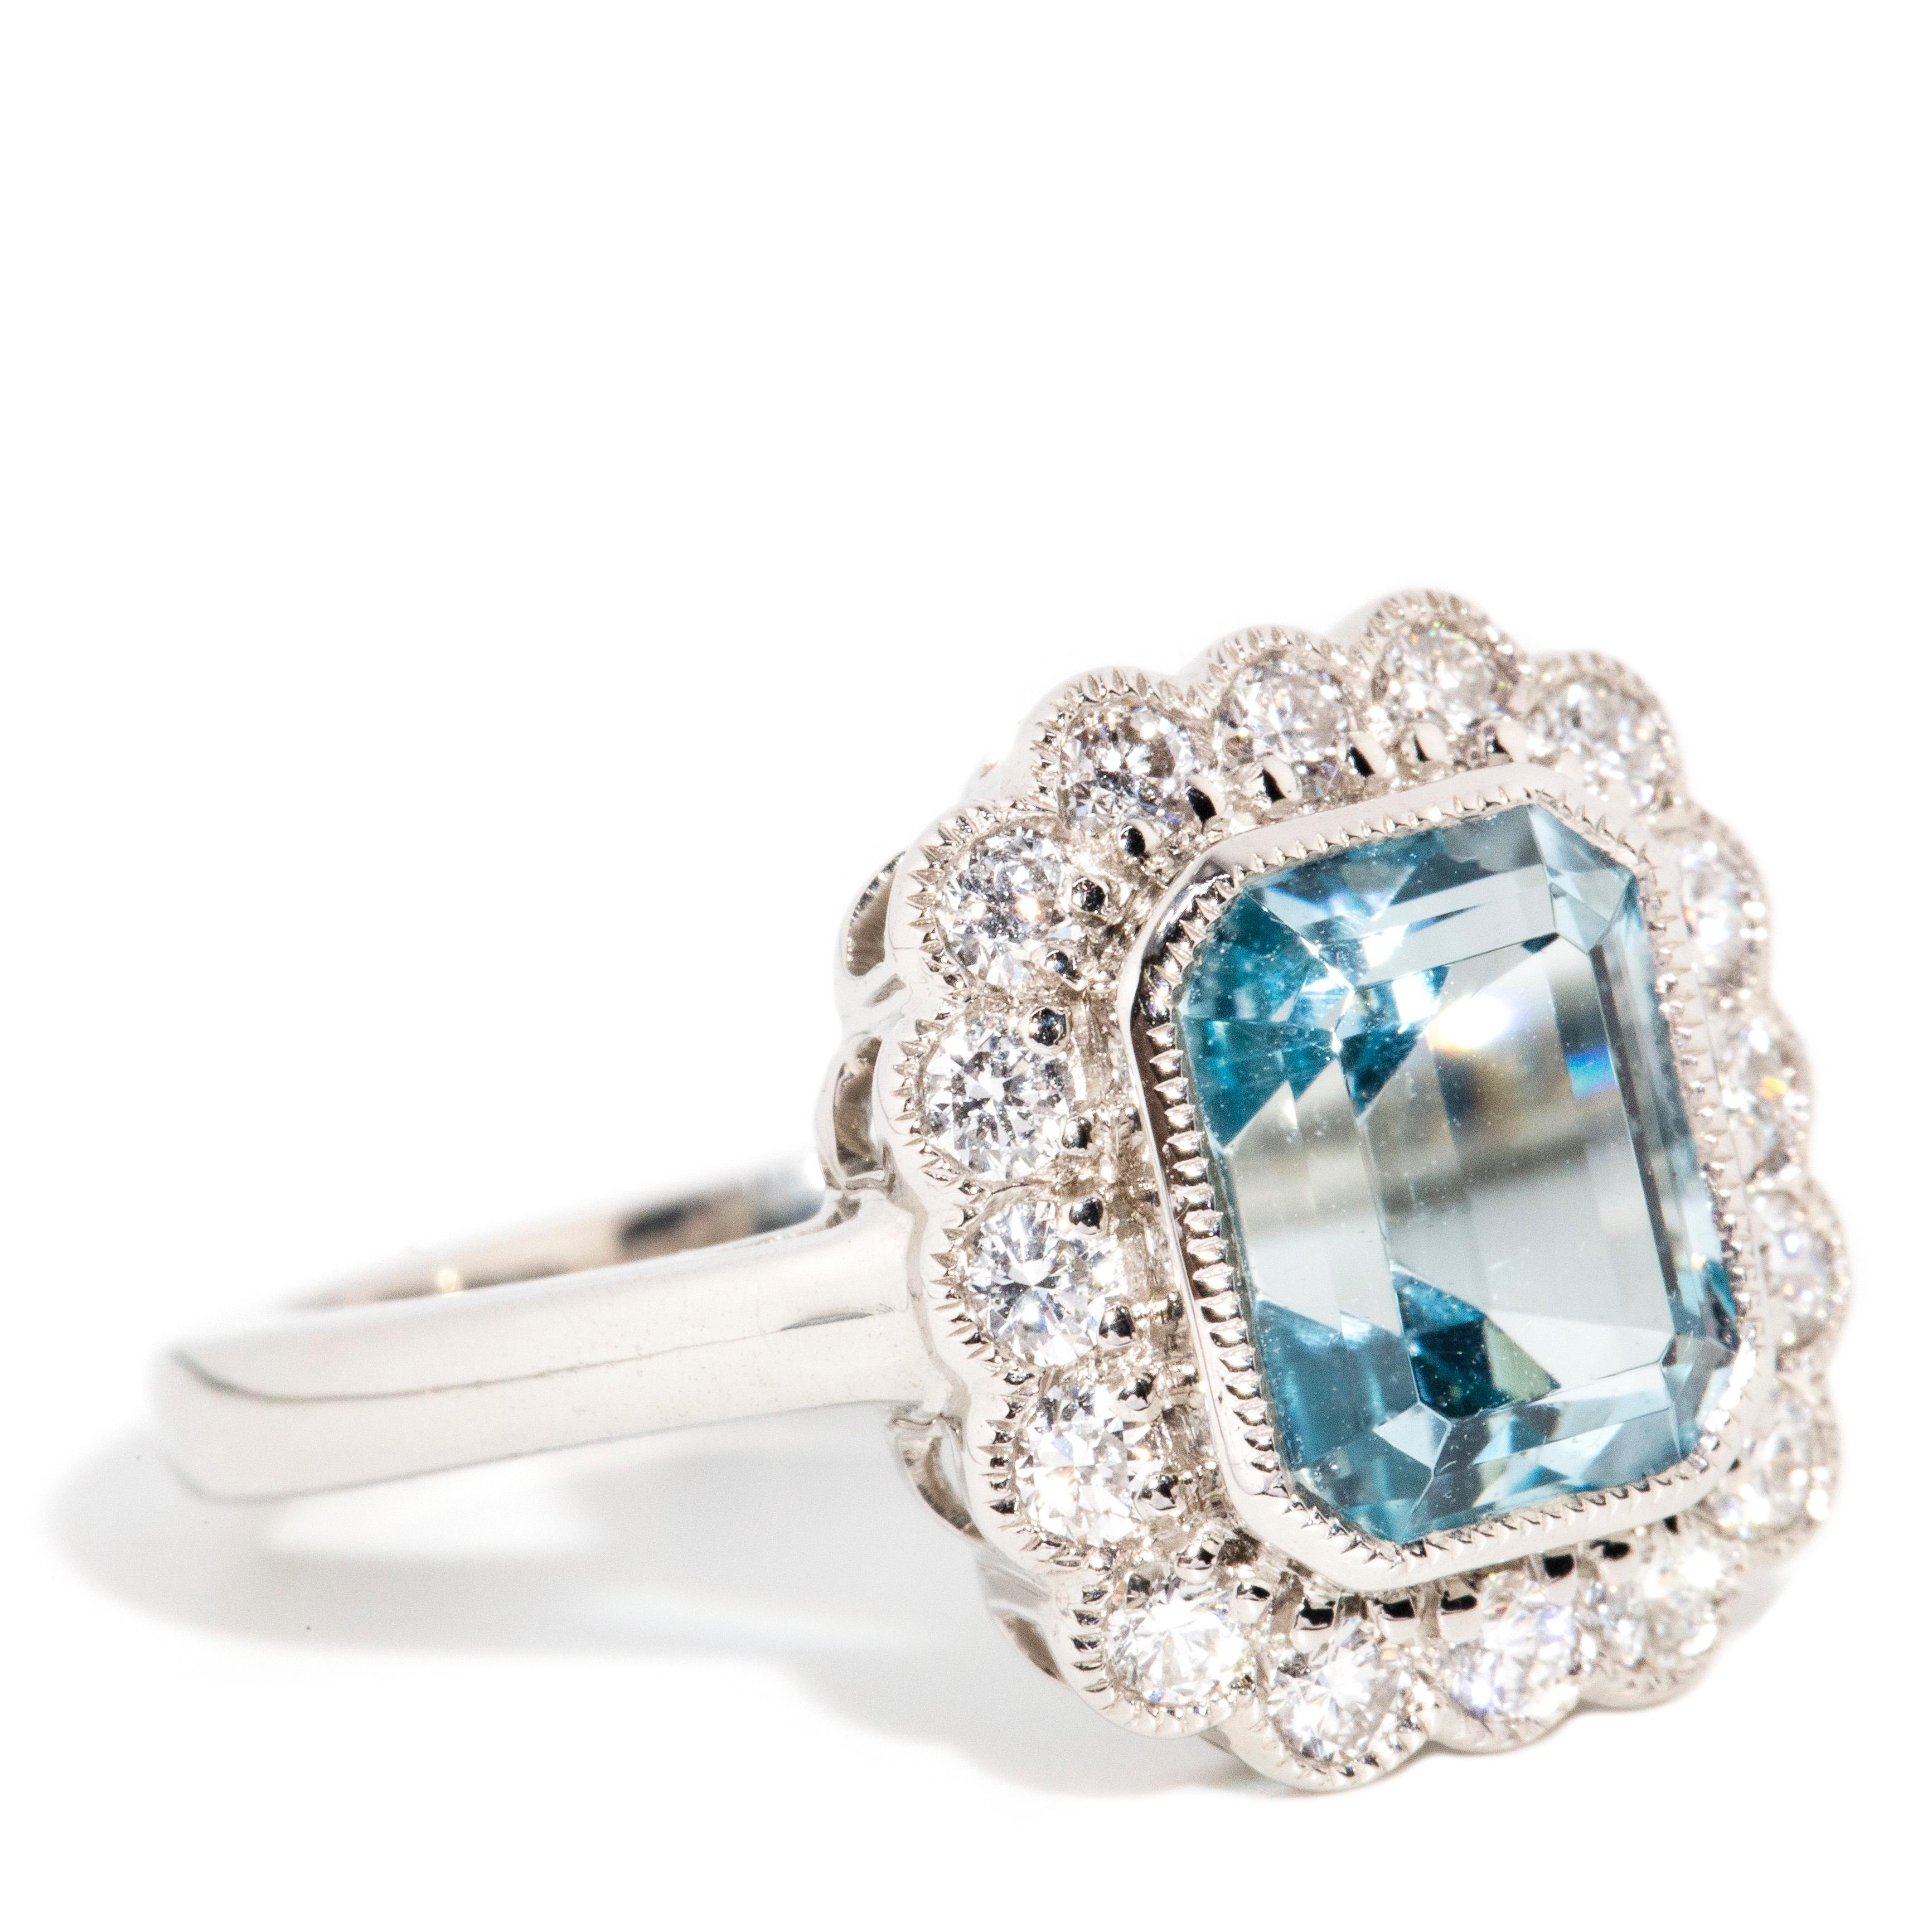 Emerald Cut Contemporary 2.61 Carat Bright Light Blue Aquamarine & Diamond Platinum Ring